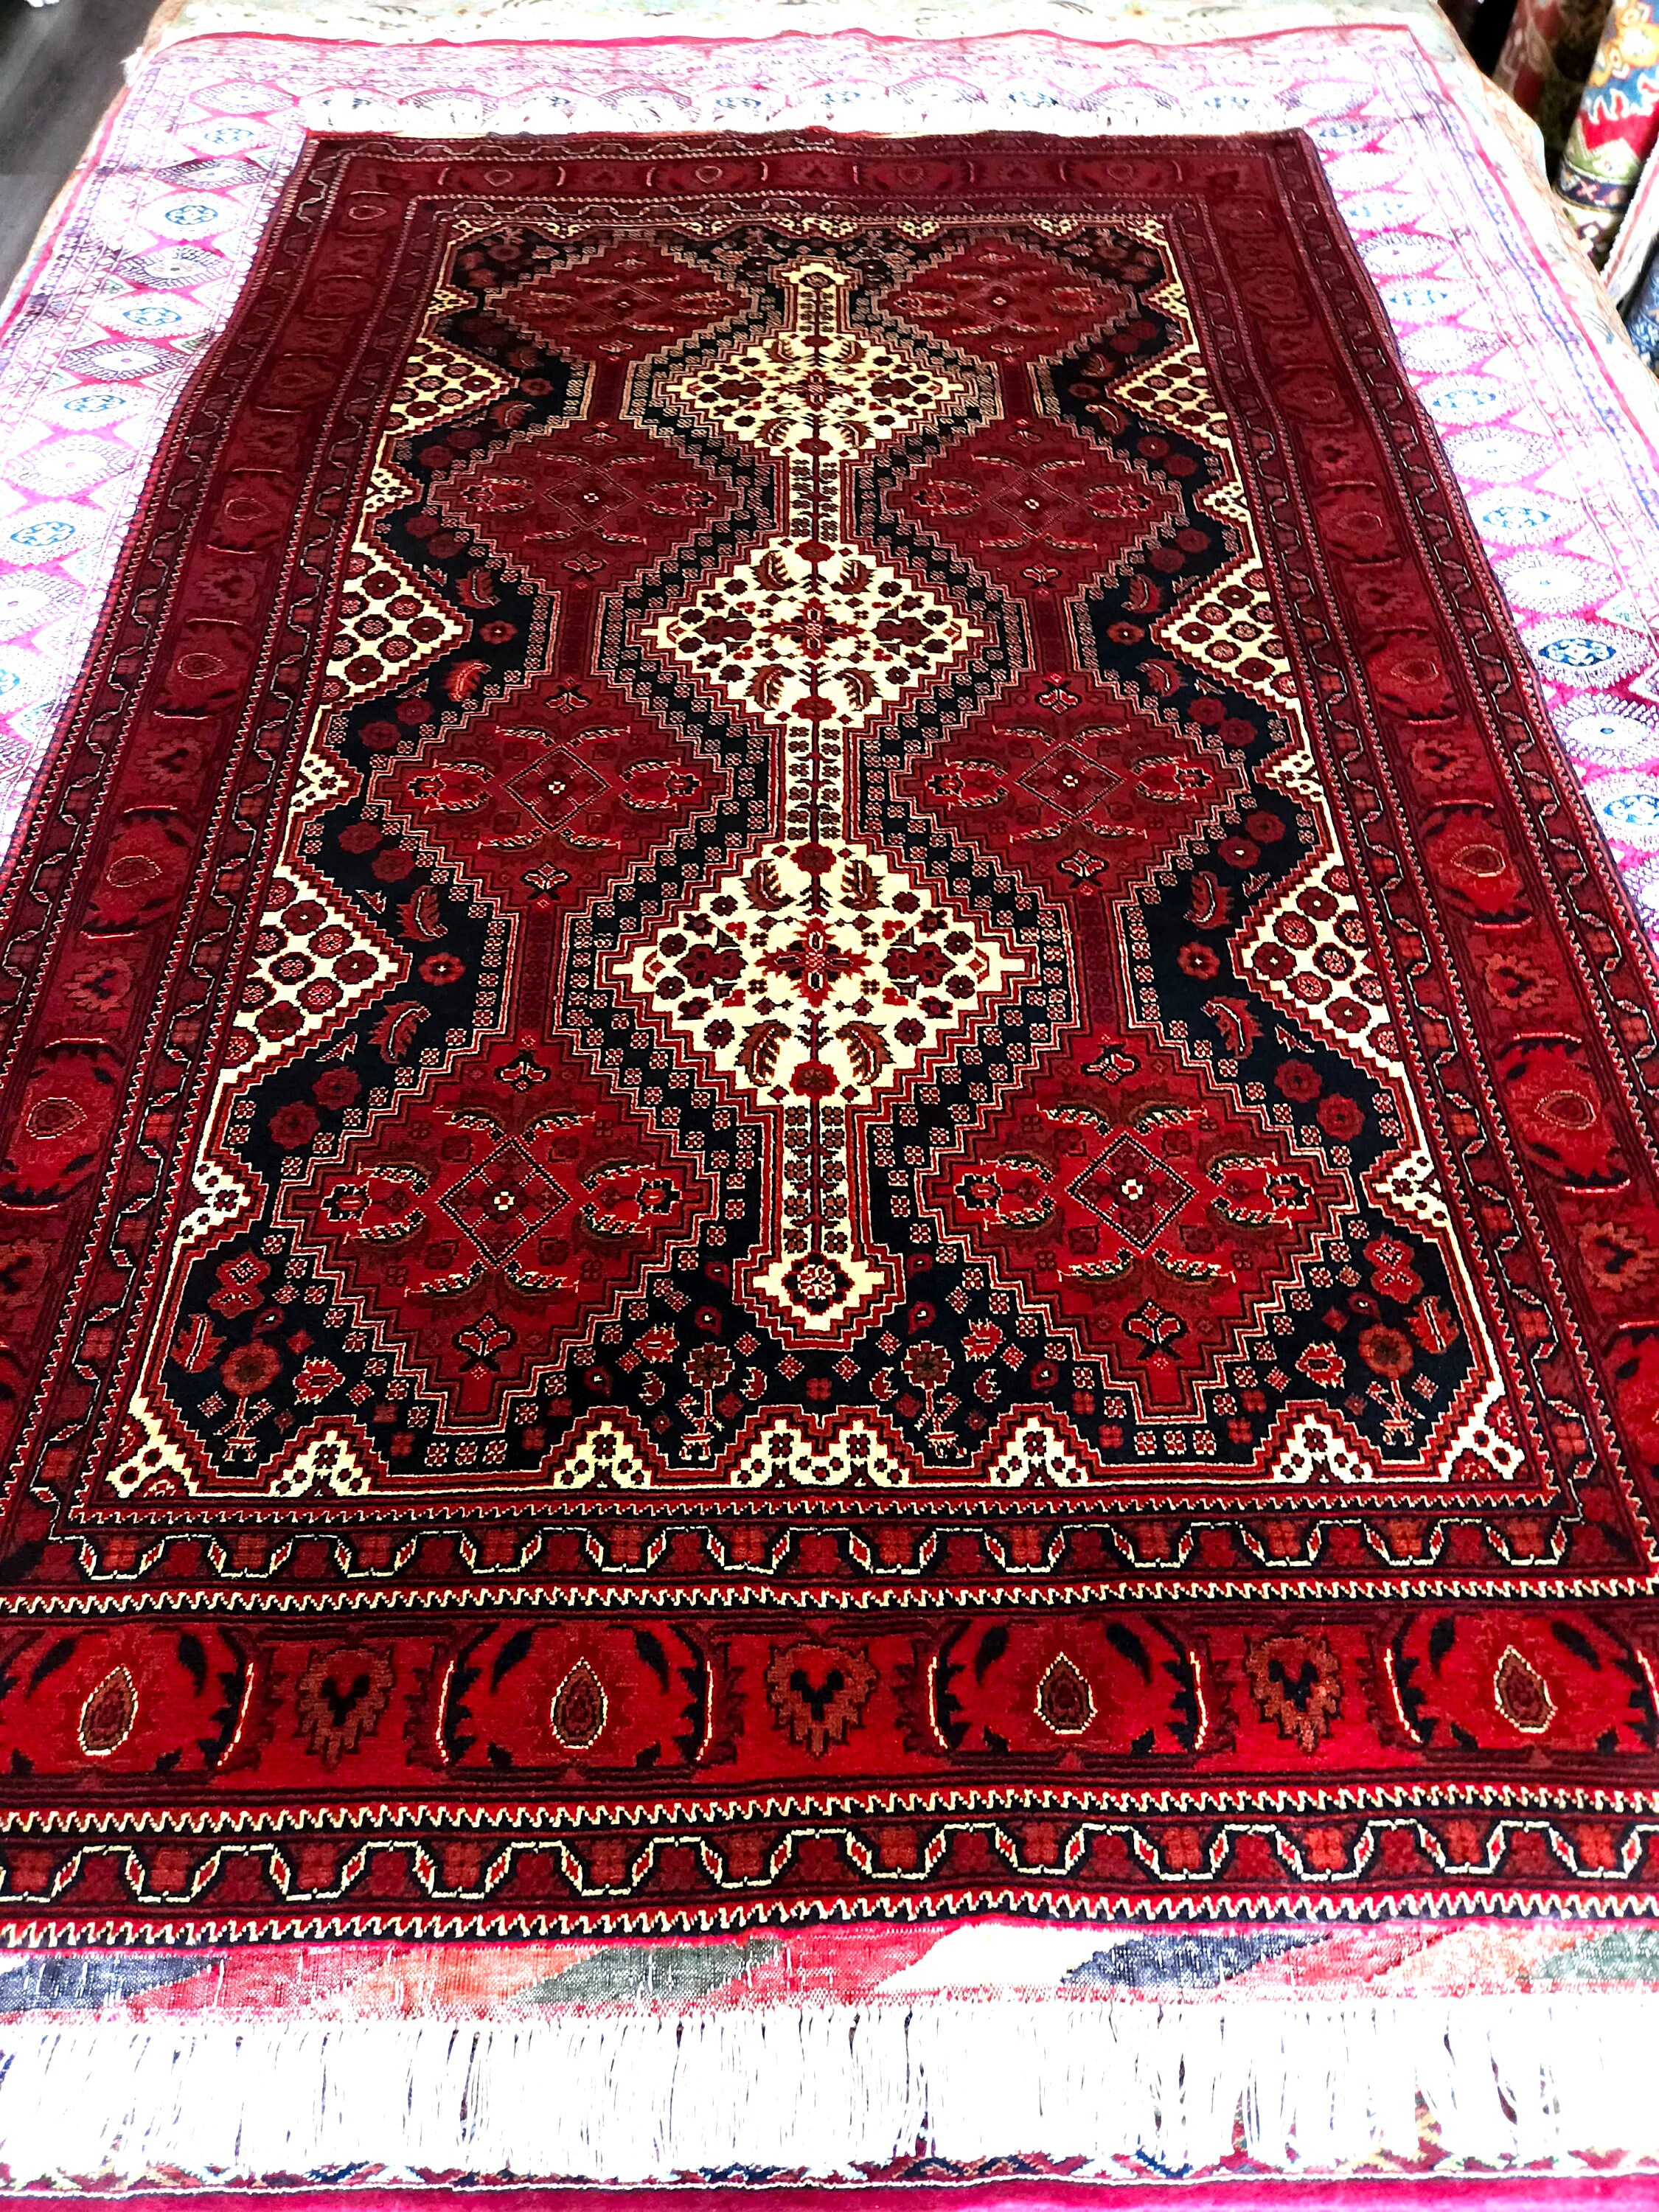 Belgique Afghan Rug, High Quality Rug, Double knotted rug, Merino wool Rug, Turkmen Rug, Area Rug, Elegant Red Rug, Home Decor, Afghan Rug